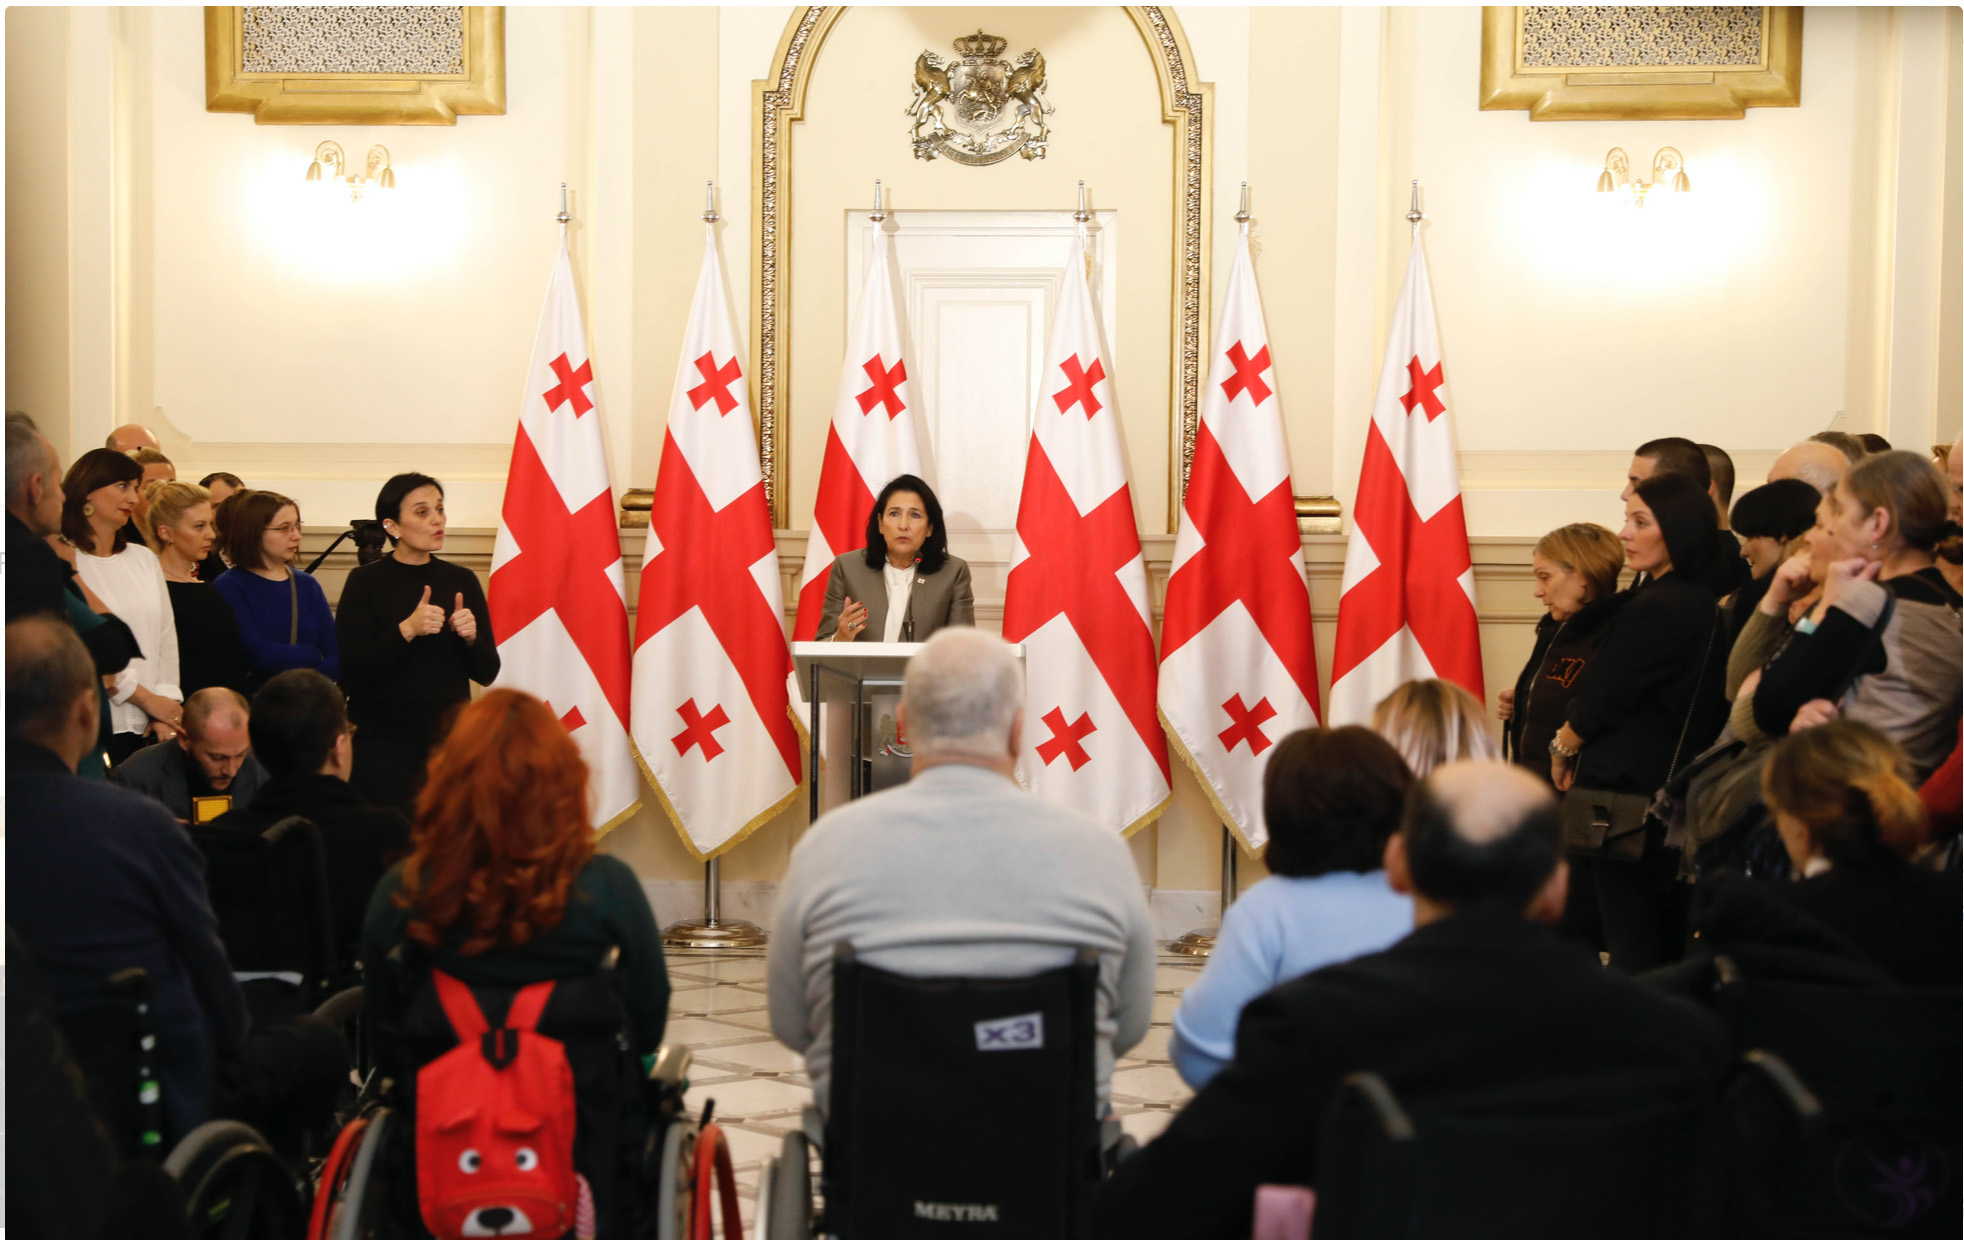 Acto público presidido en enero por Salome Zurabishvili en el palacio presidencial georgiano [Presidencia de Georgia]